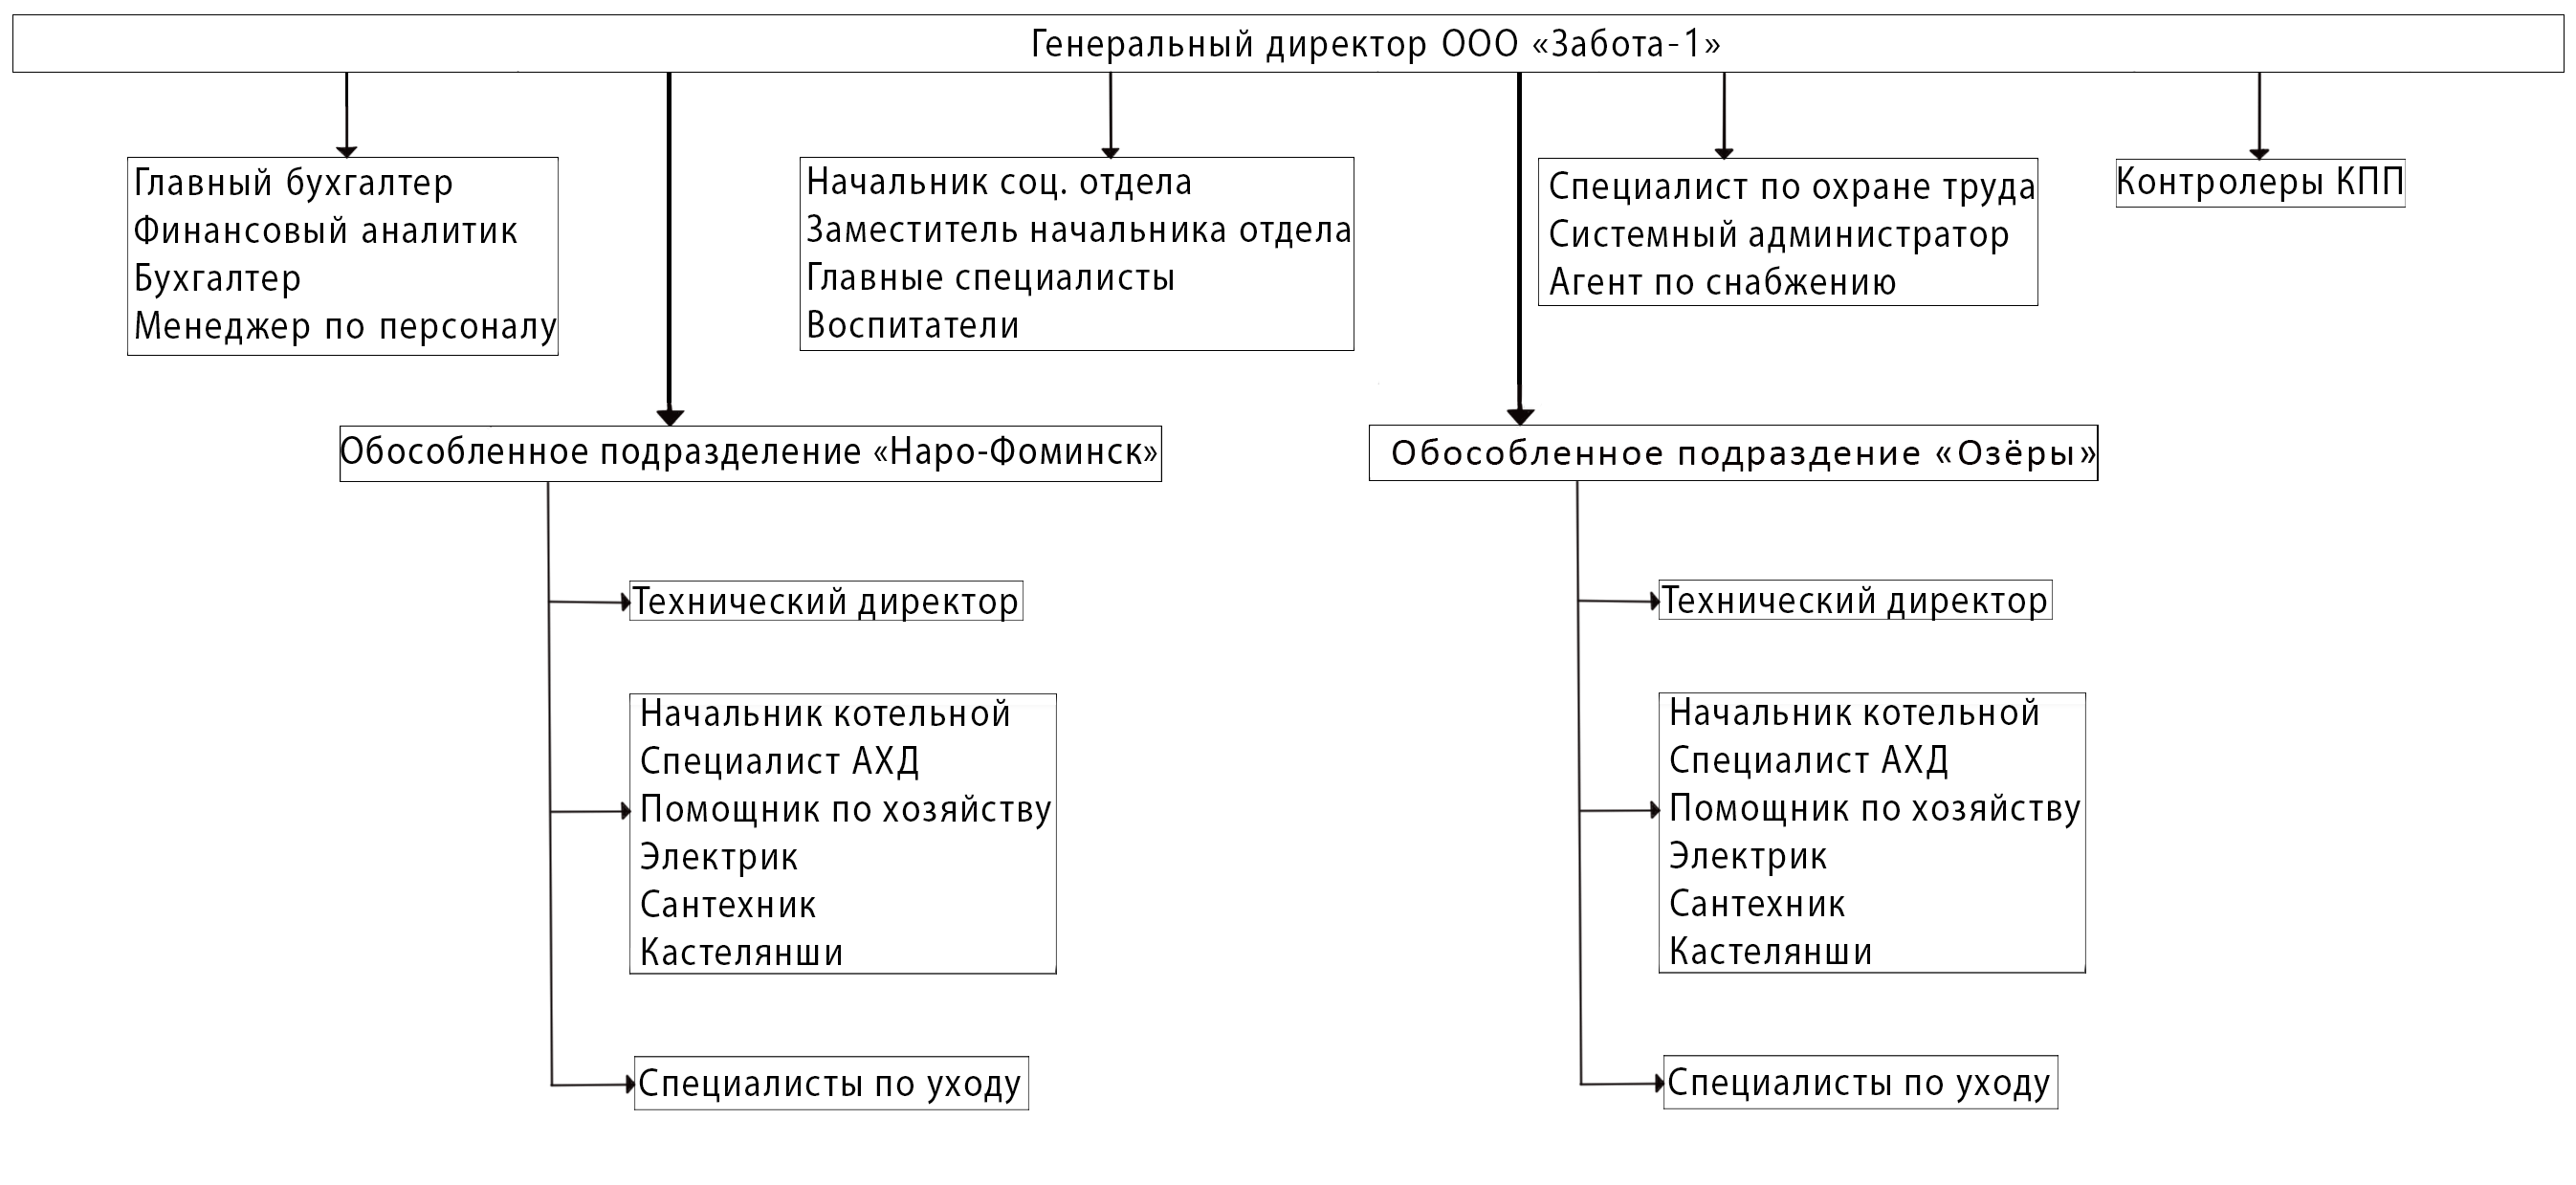 Структурная таблица органов управления